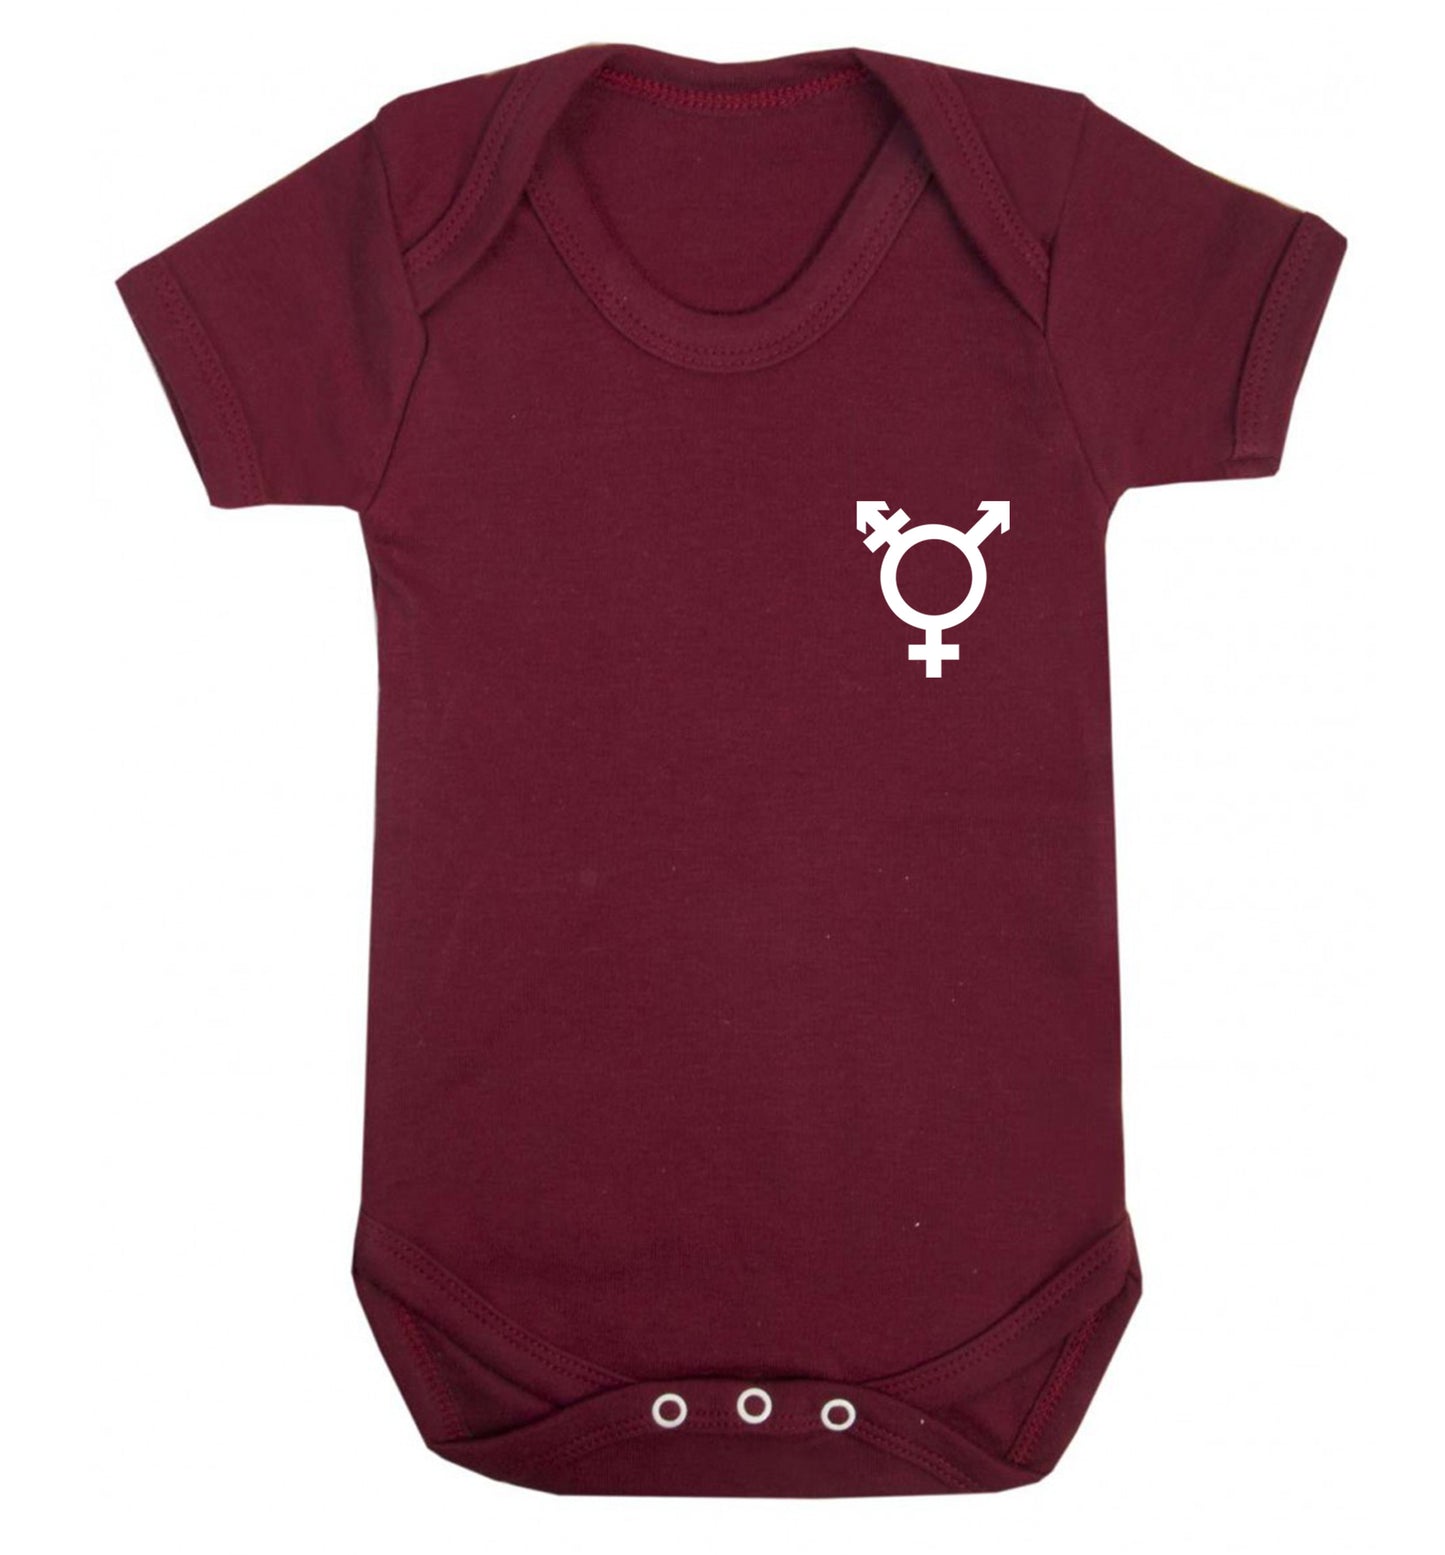 Trans gender symbol pocket Baby Vest maroon 18-24 months